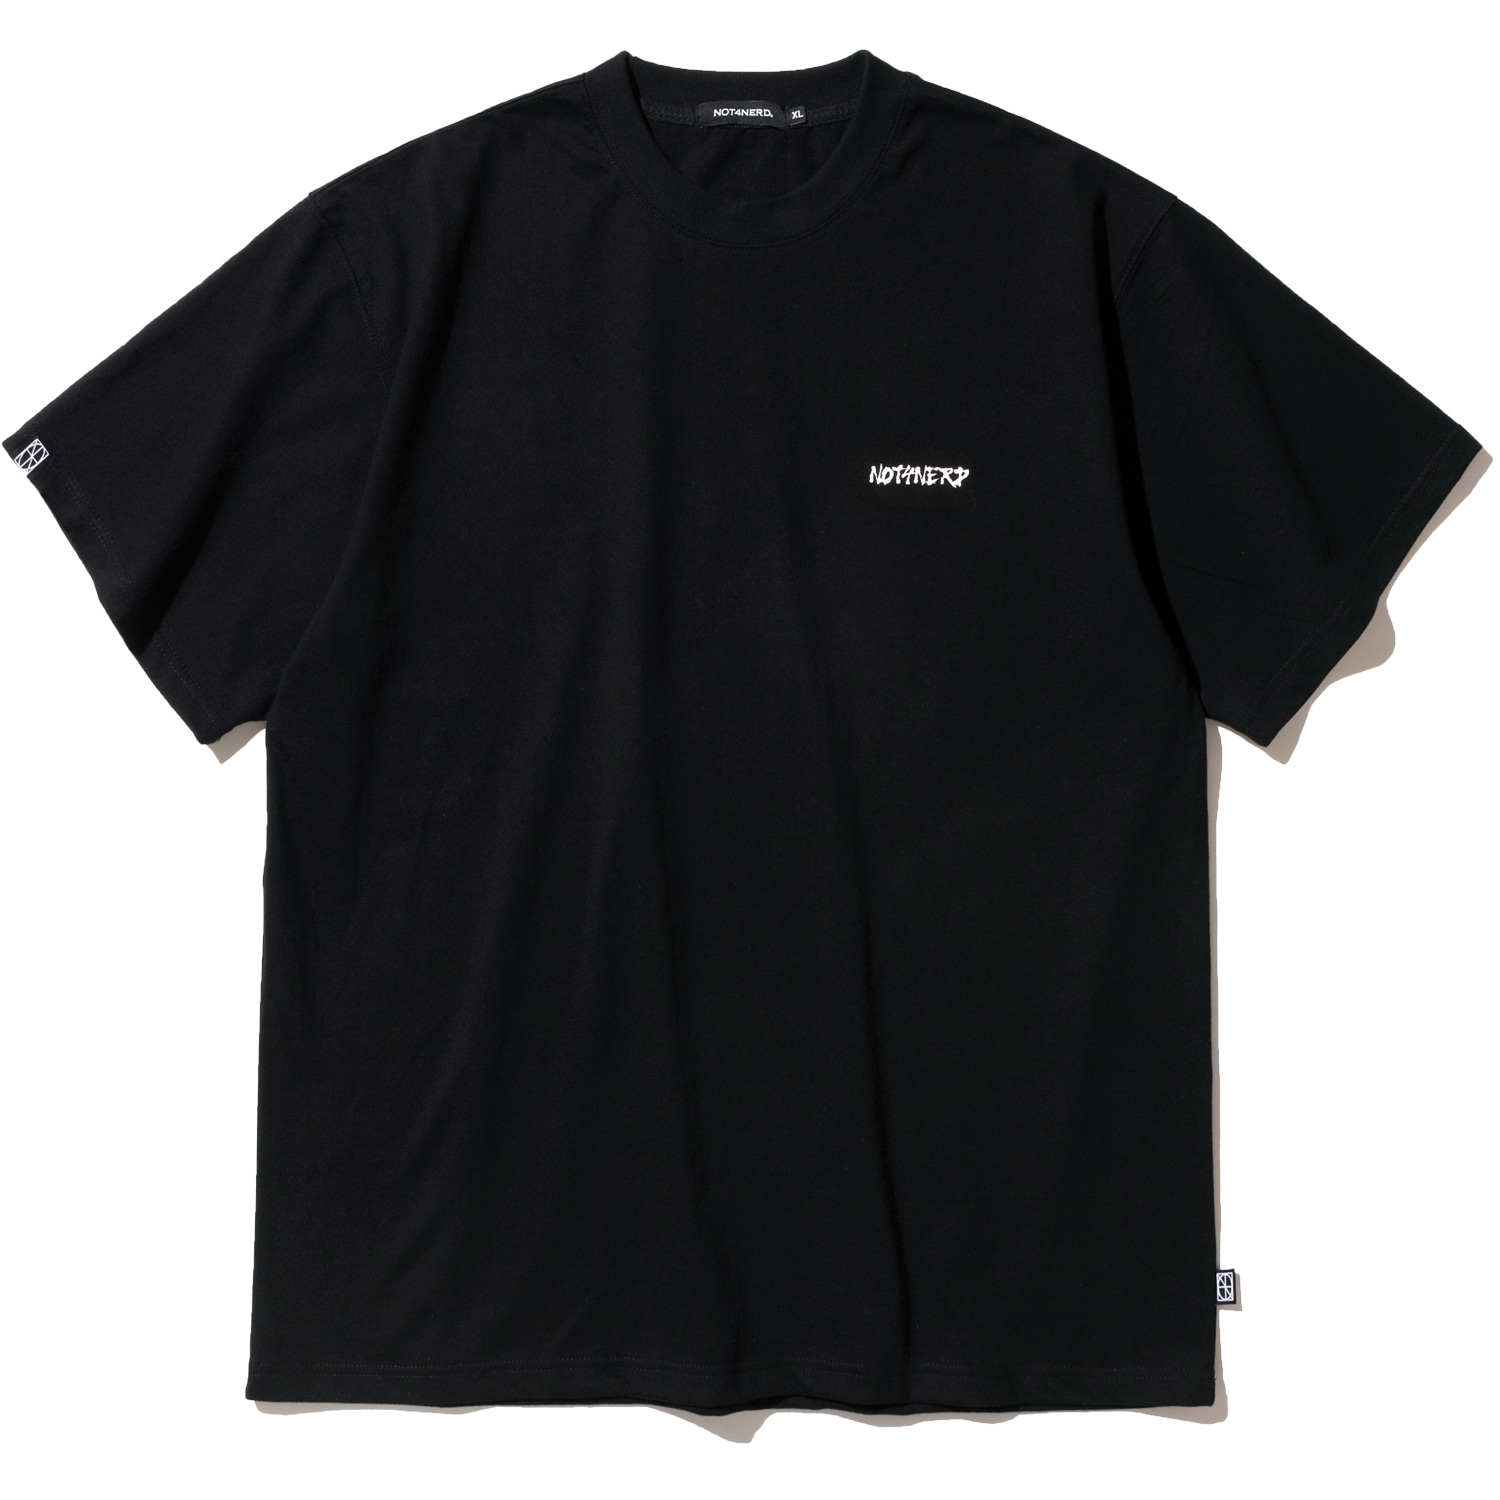 Brush Circle Logo T-Shirts - Black,NOT4NERD